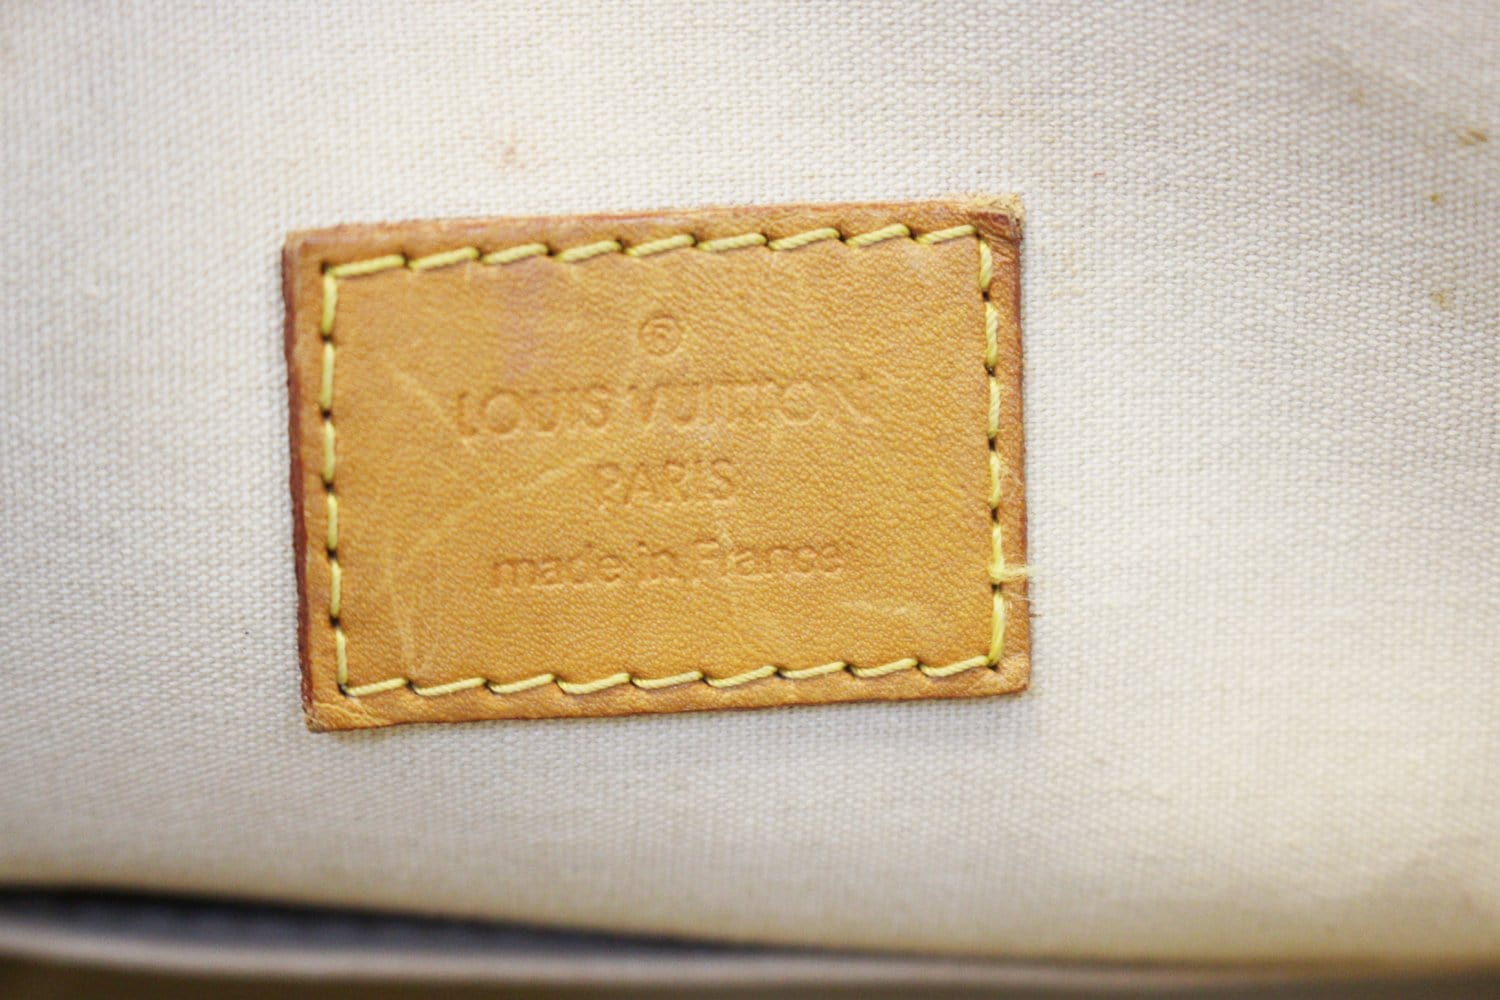 Louis Vuitton Cream Monogram Vernis Alma GM Bag White Leather ref